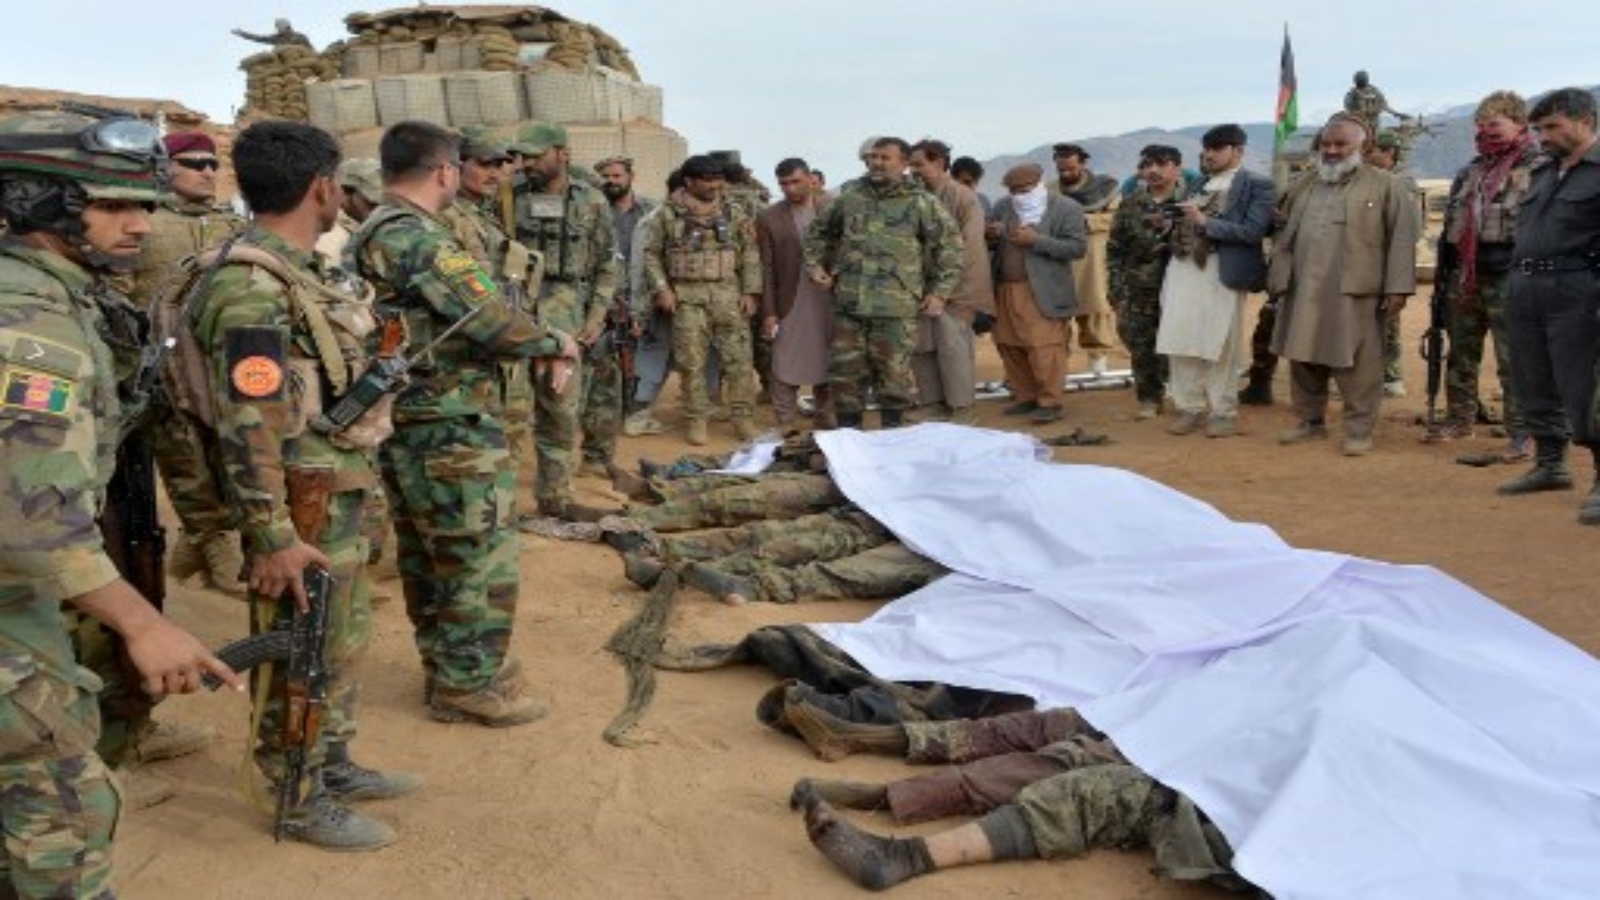 قوات أمن أفغان تتجمع حول جثث مقاتلي طالبان الذين قُتلوا أثناء القتال والغارات الجوية ، في منطقة خوجياني بمحافظة ننكرهار في 12 فبراير 2021.